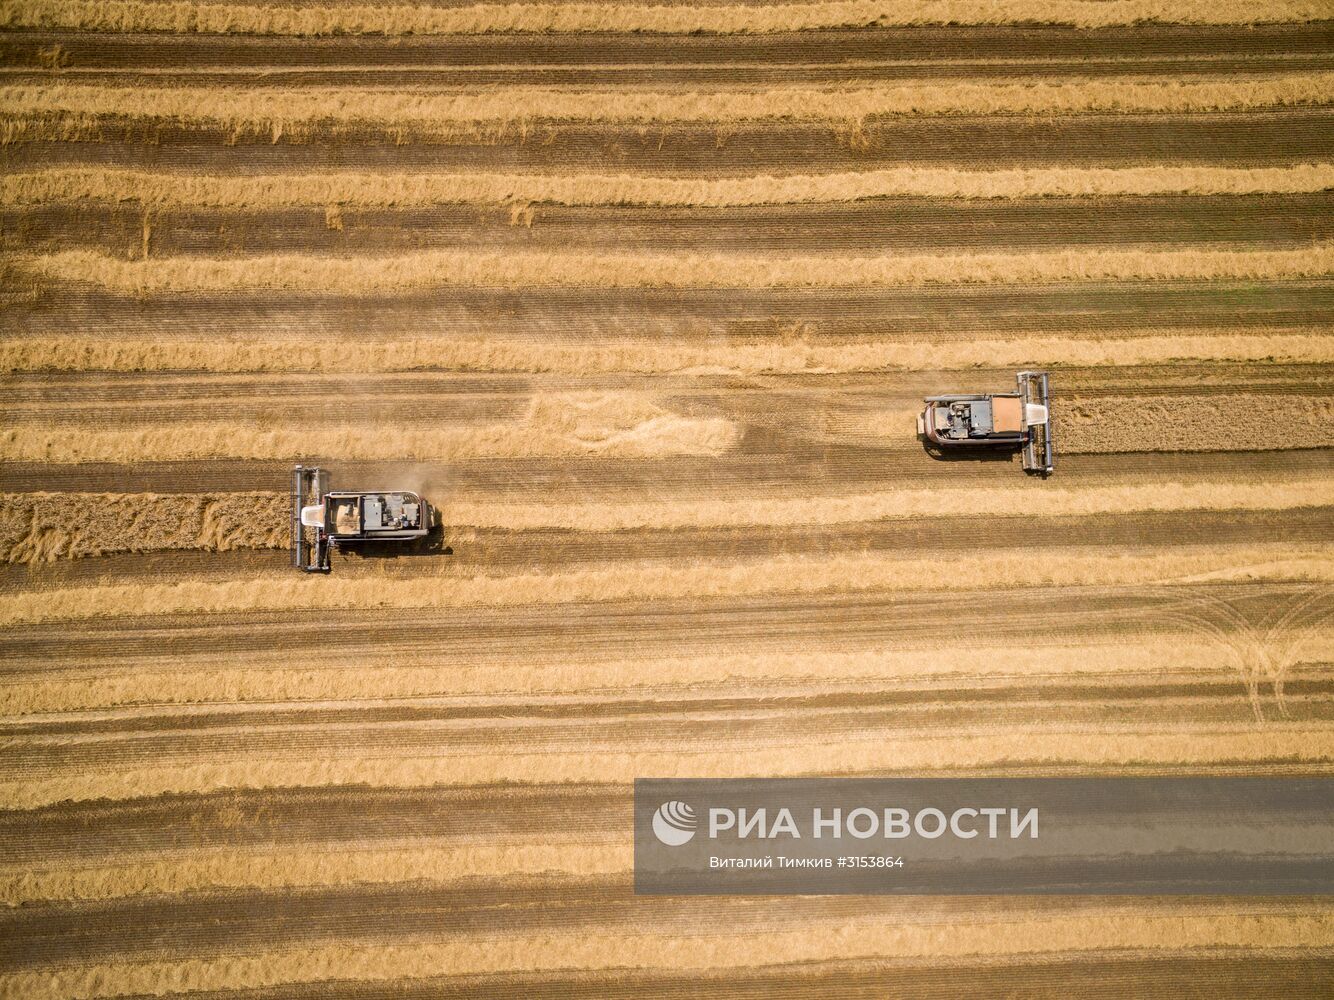 Уборка зерновых в Крансодарском крае